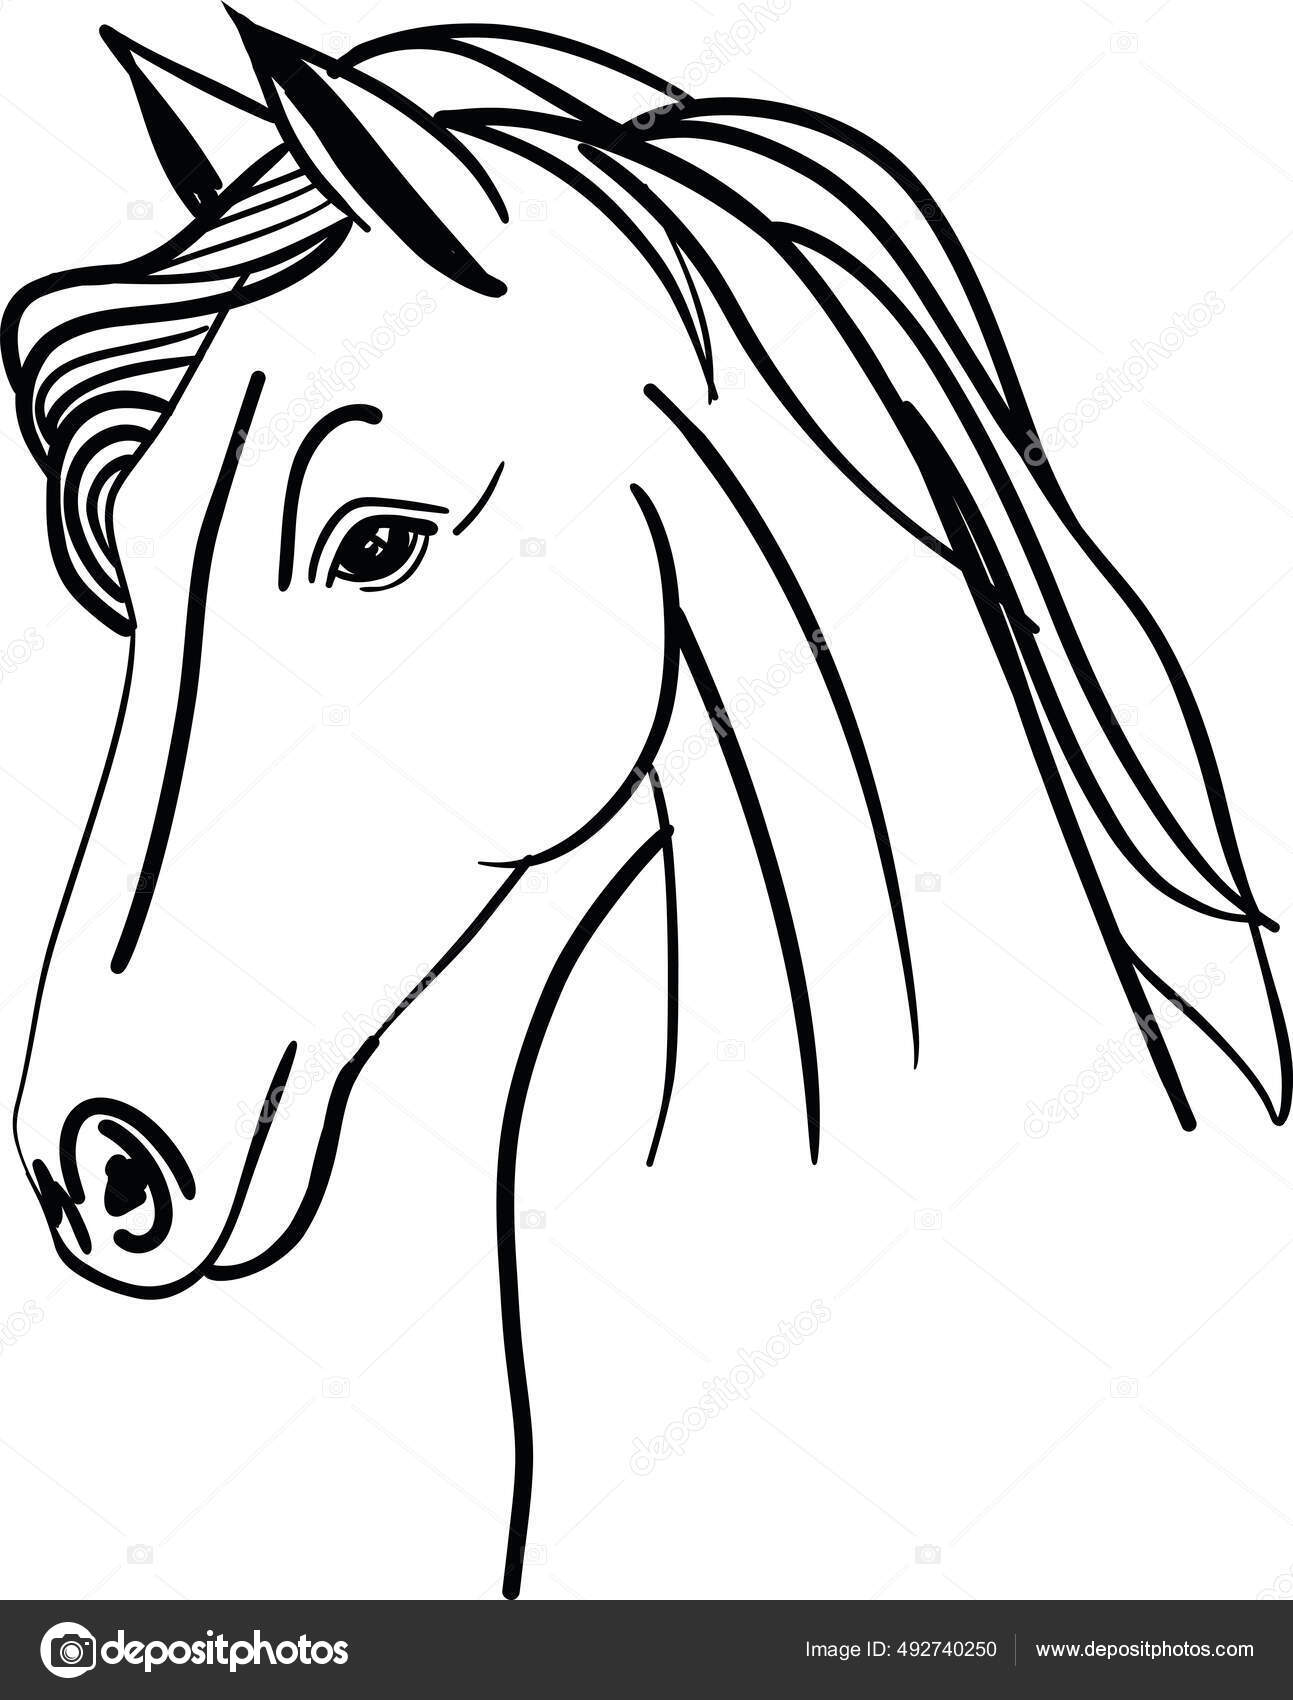 Horse Imagens de Stock de Arte Vetorial